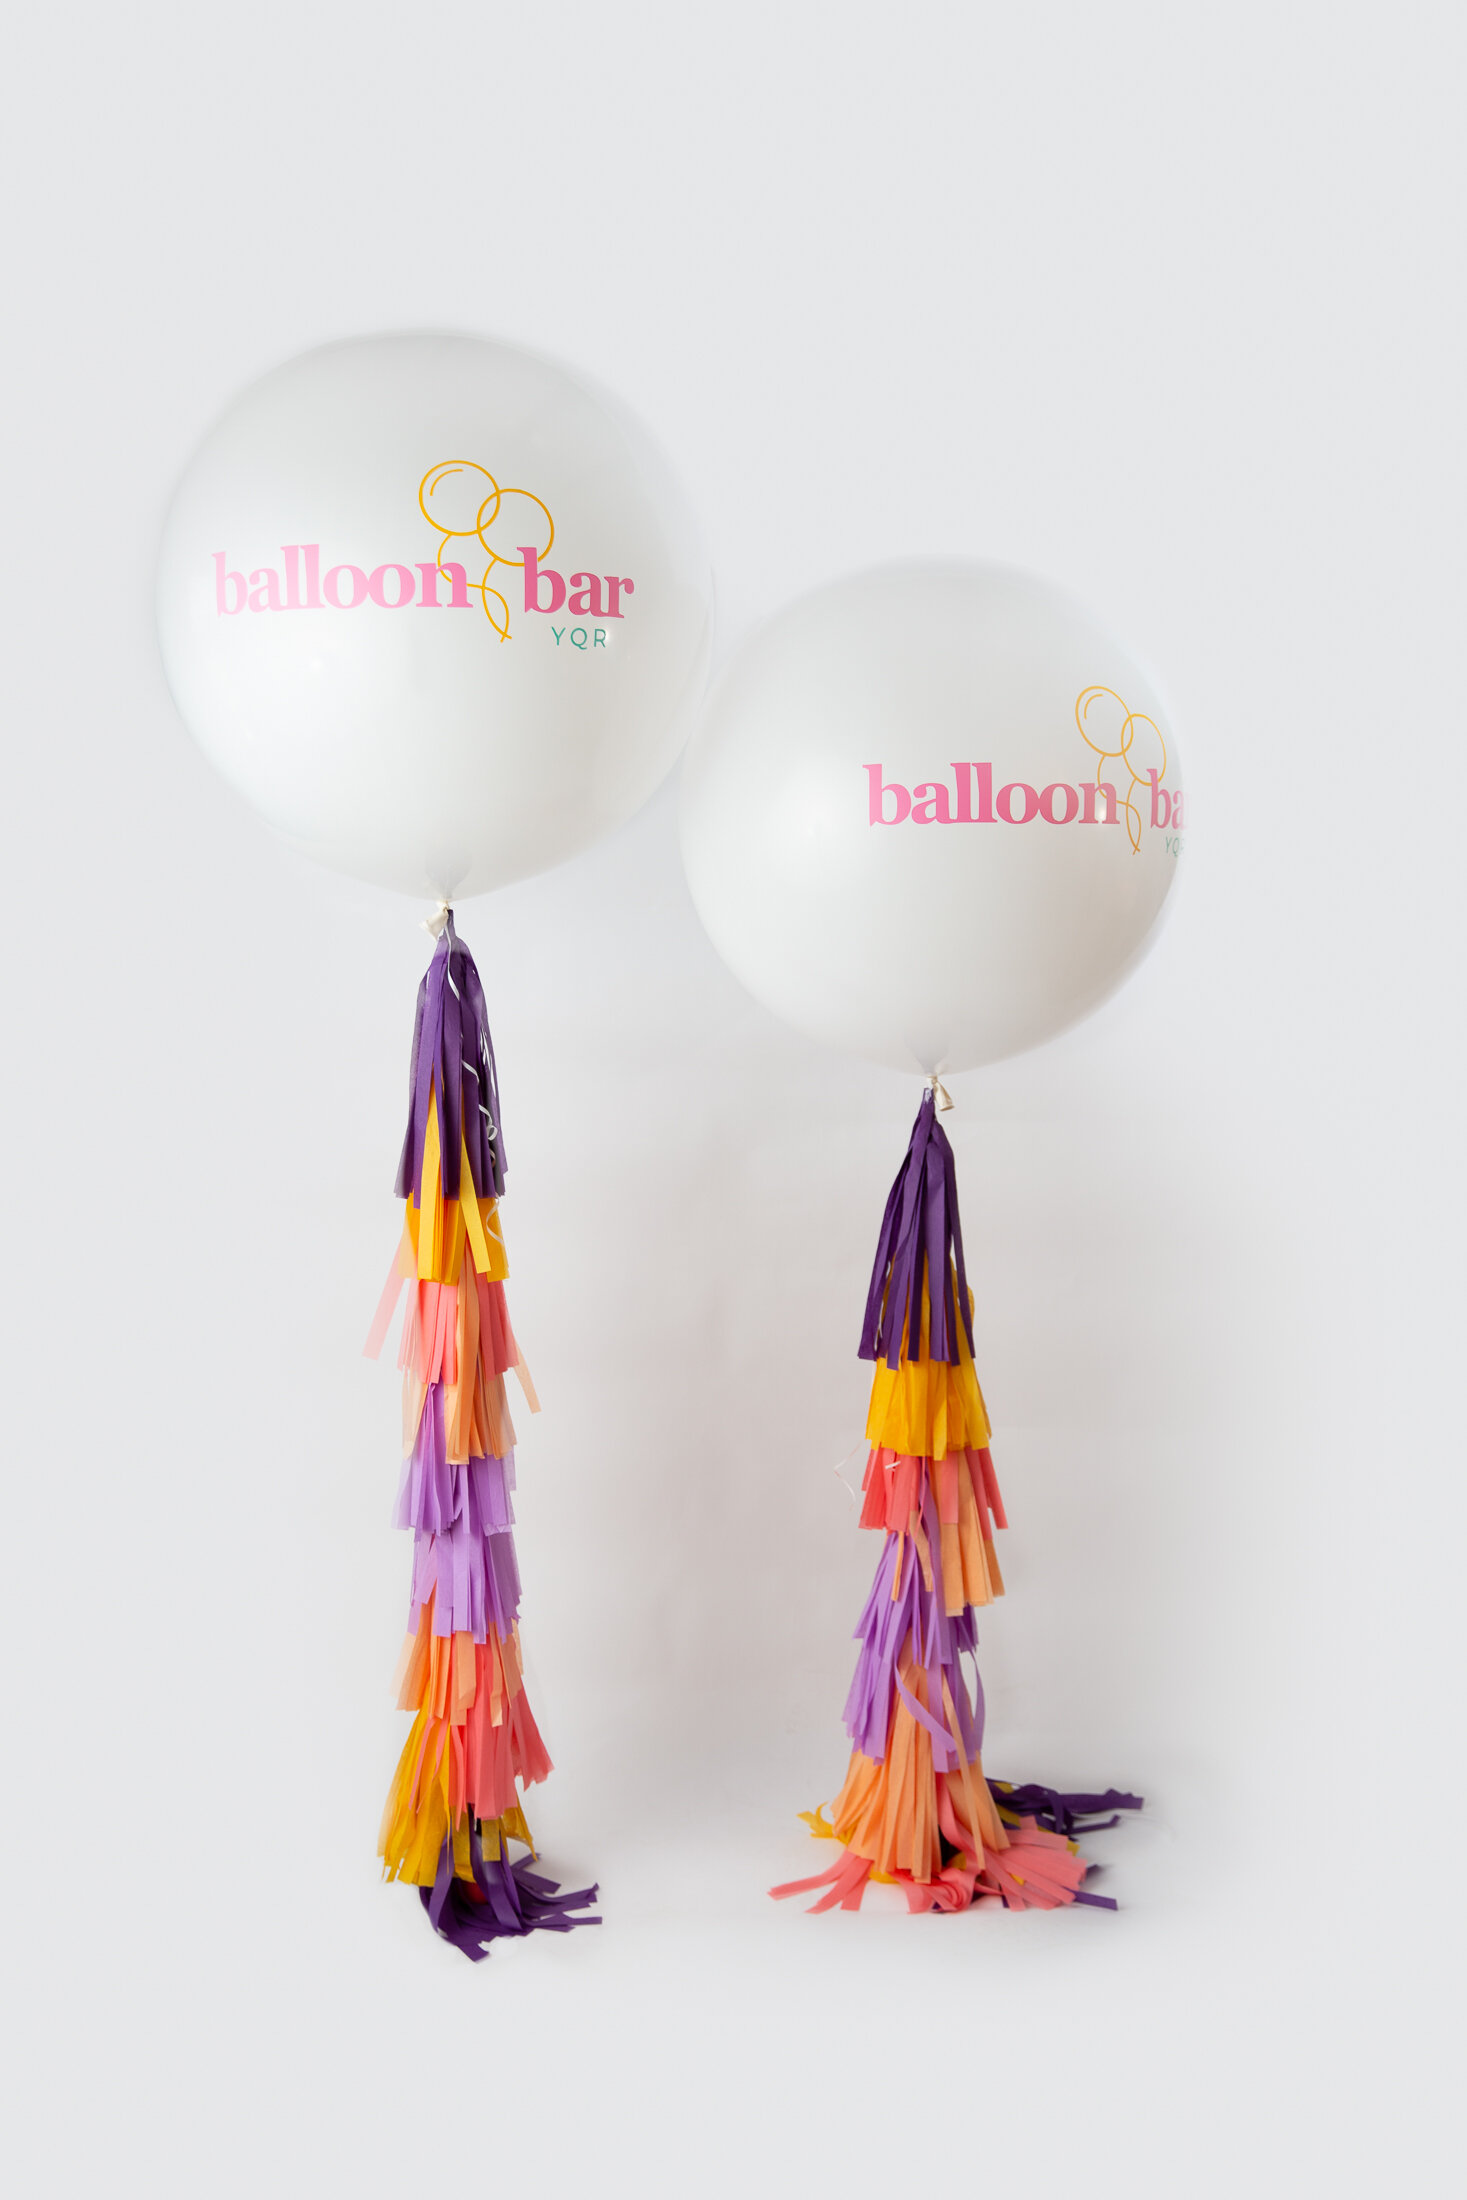 op vakantie hebben zich vergist Bestrating Balloon Bar YQR